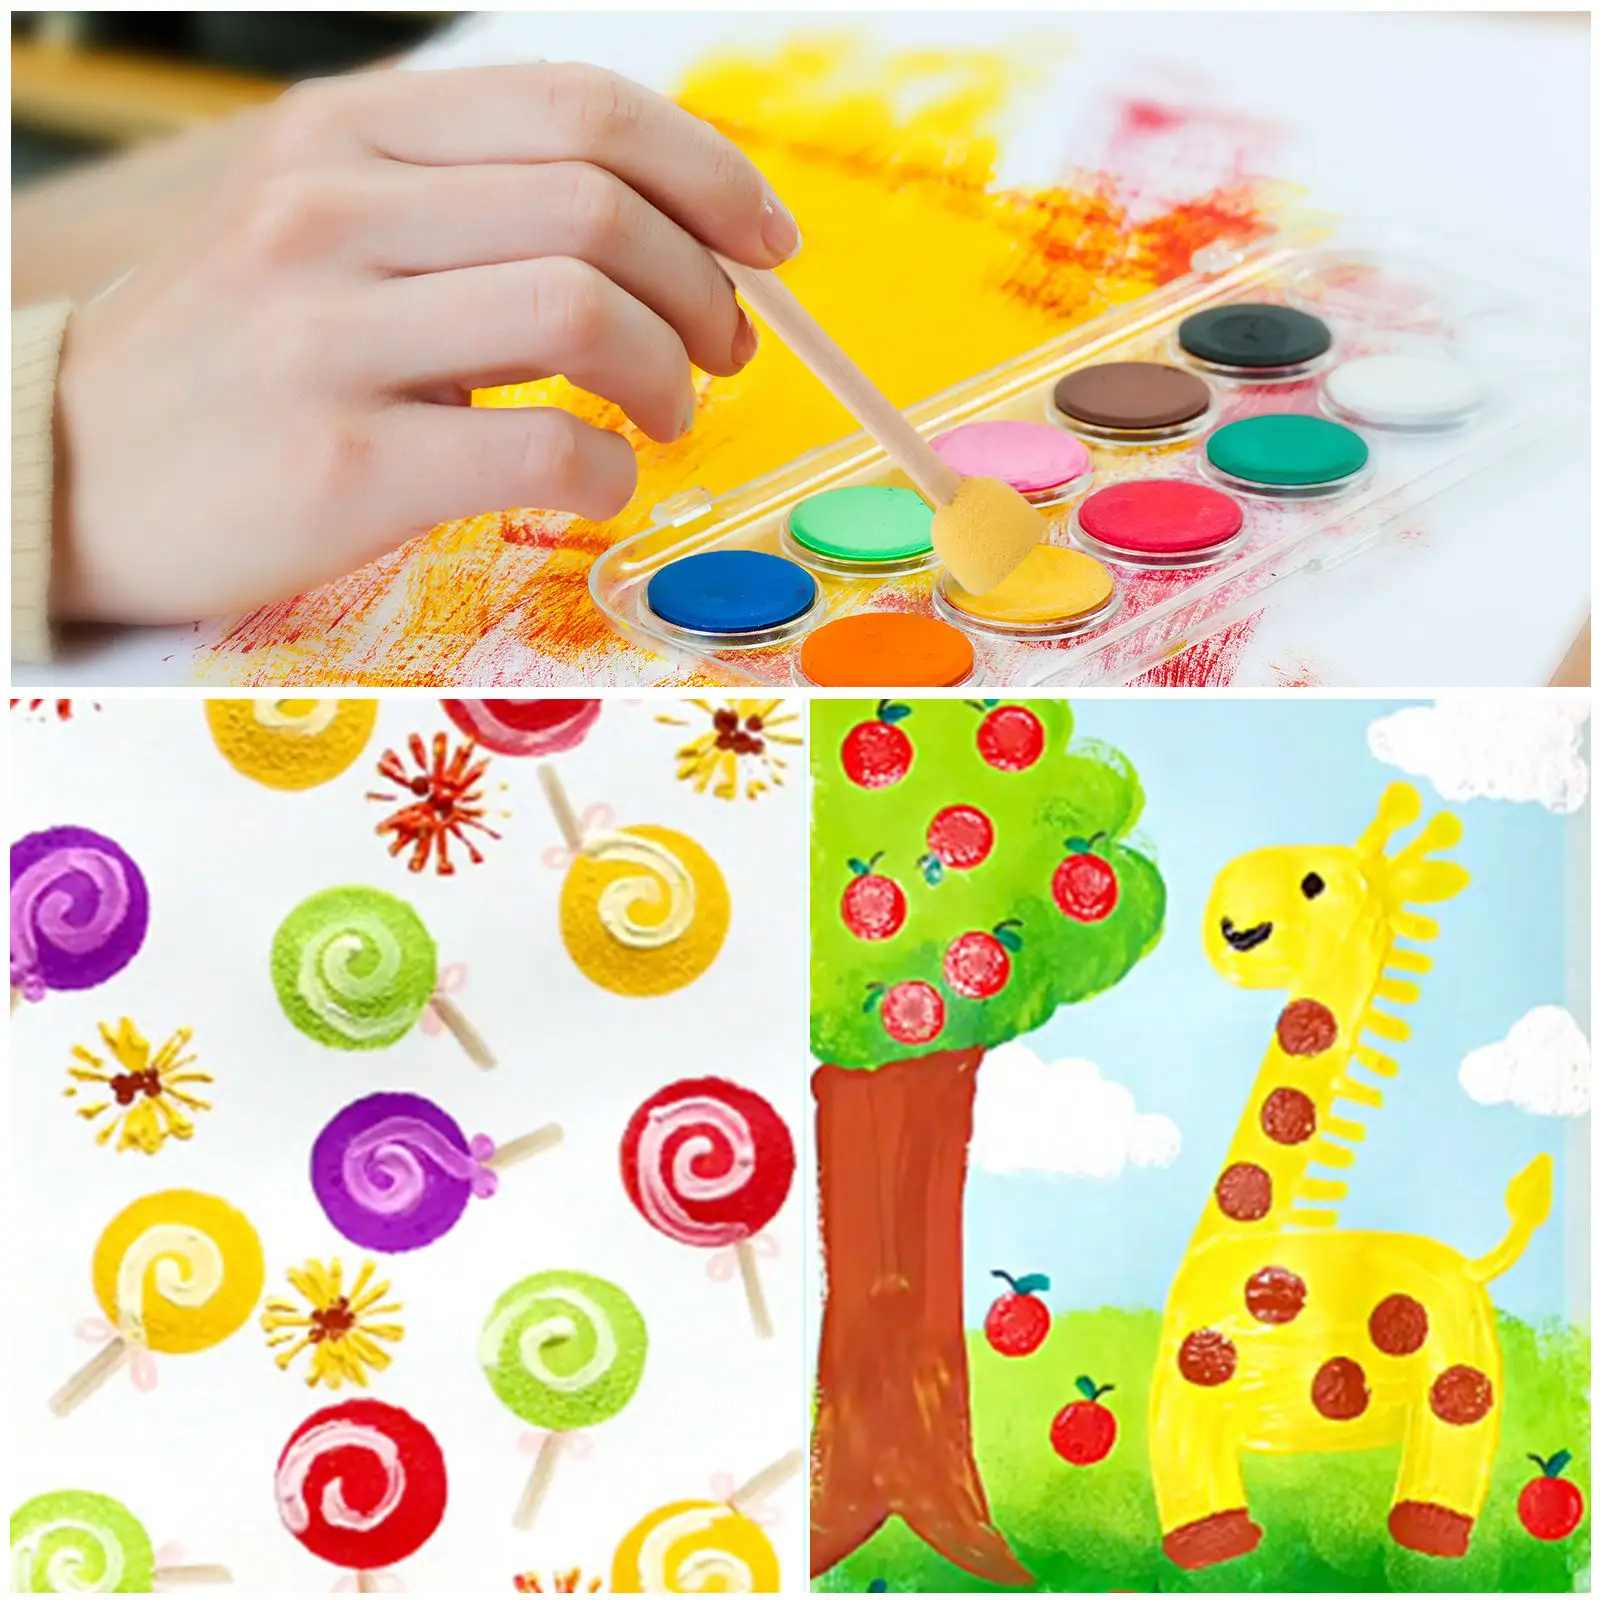 Çocuk çizim araçları 5 parça Diy boyama oyuncaklar çocuklar için sarı köpük sızdırmaz ahşap kolu sünger fırça